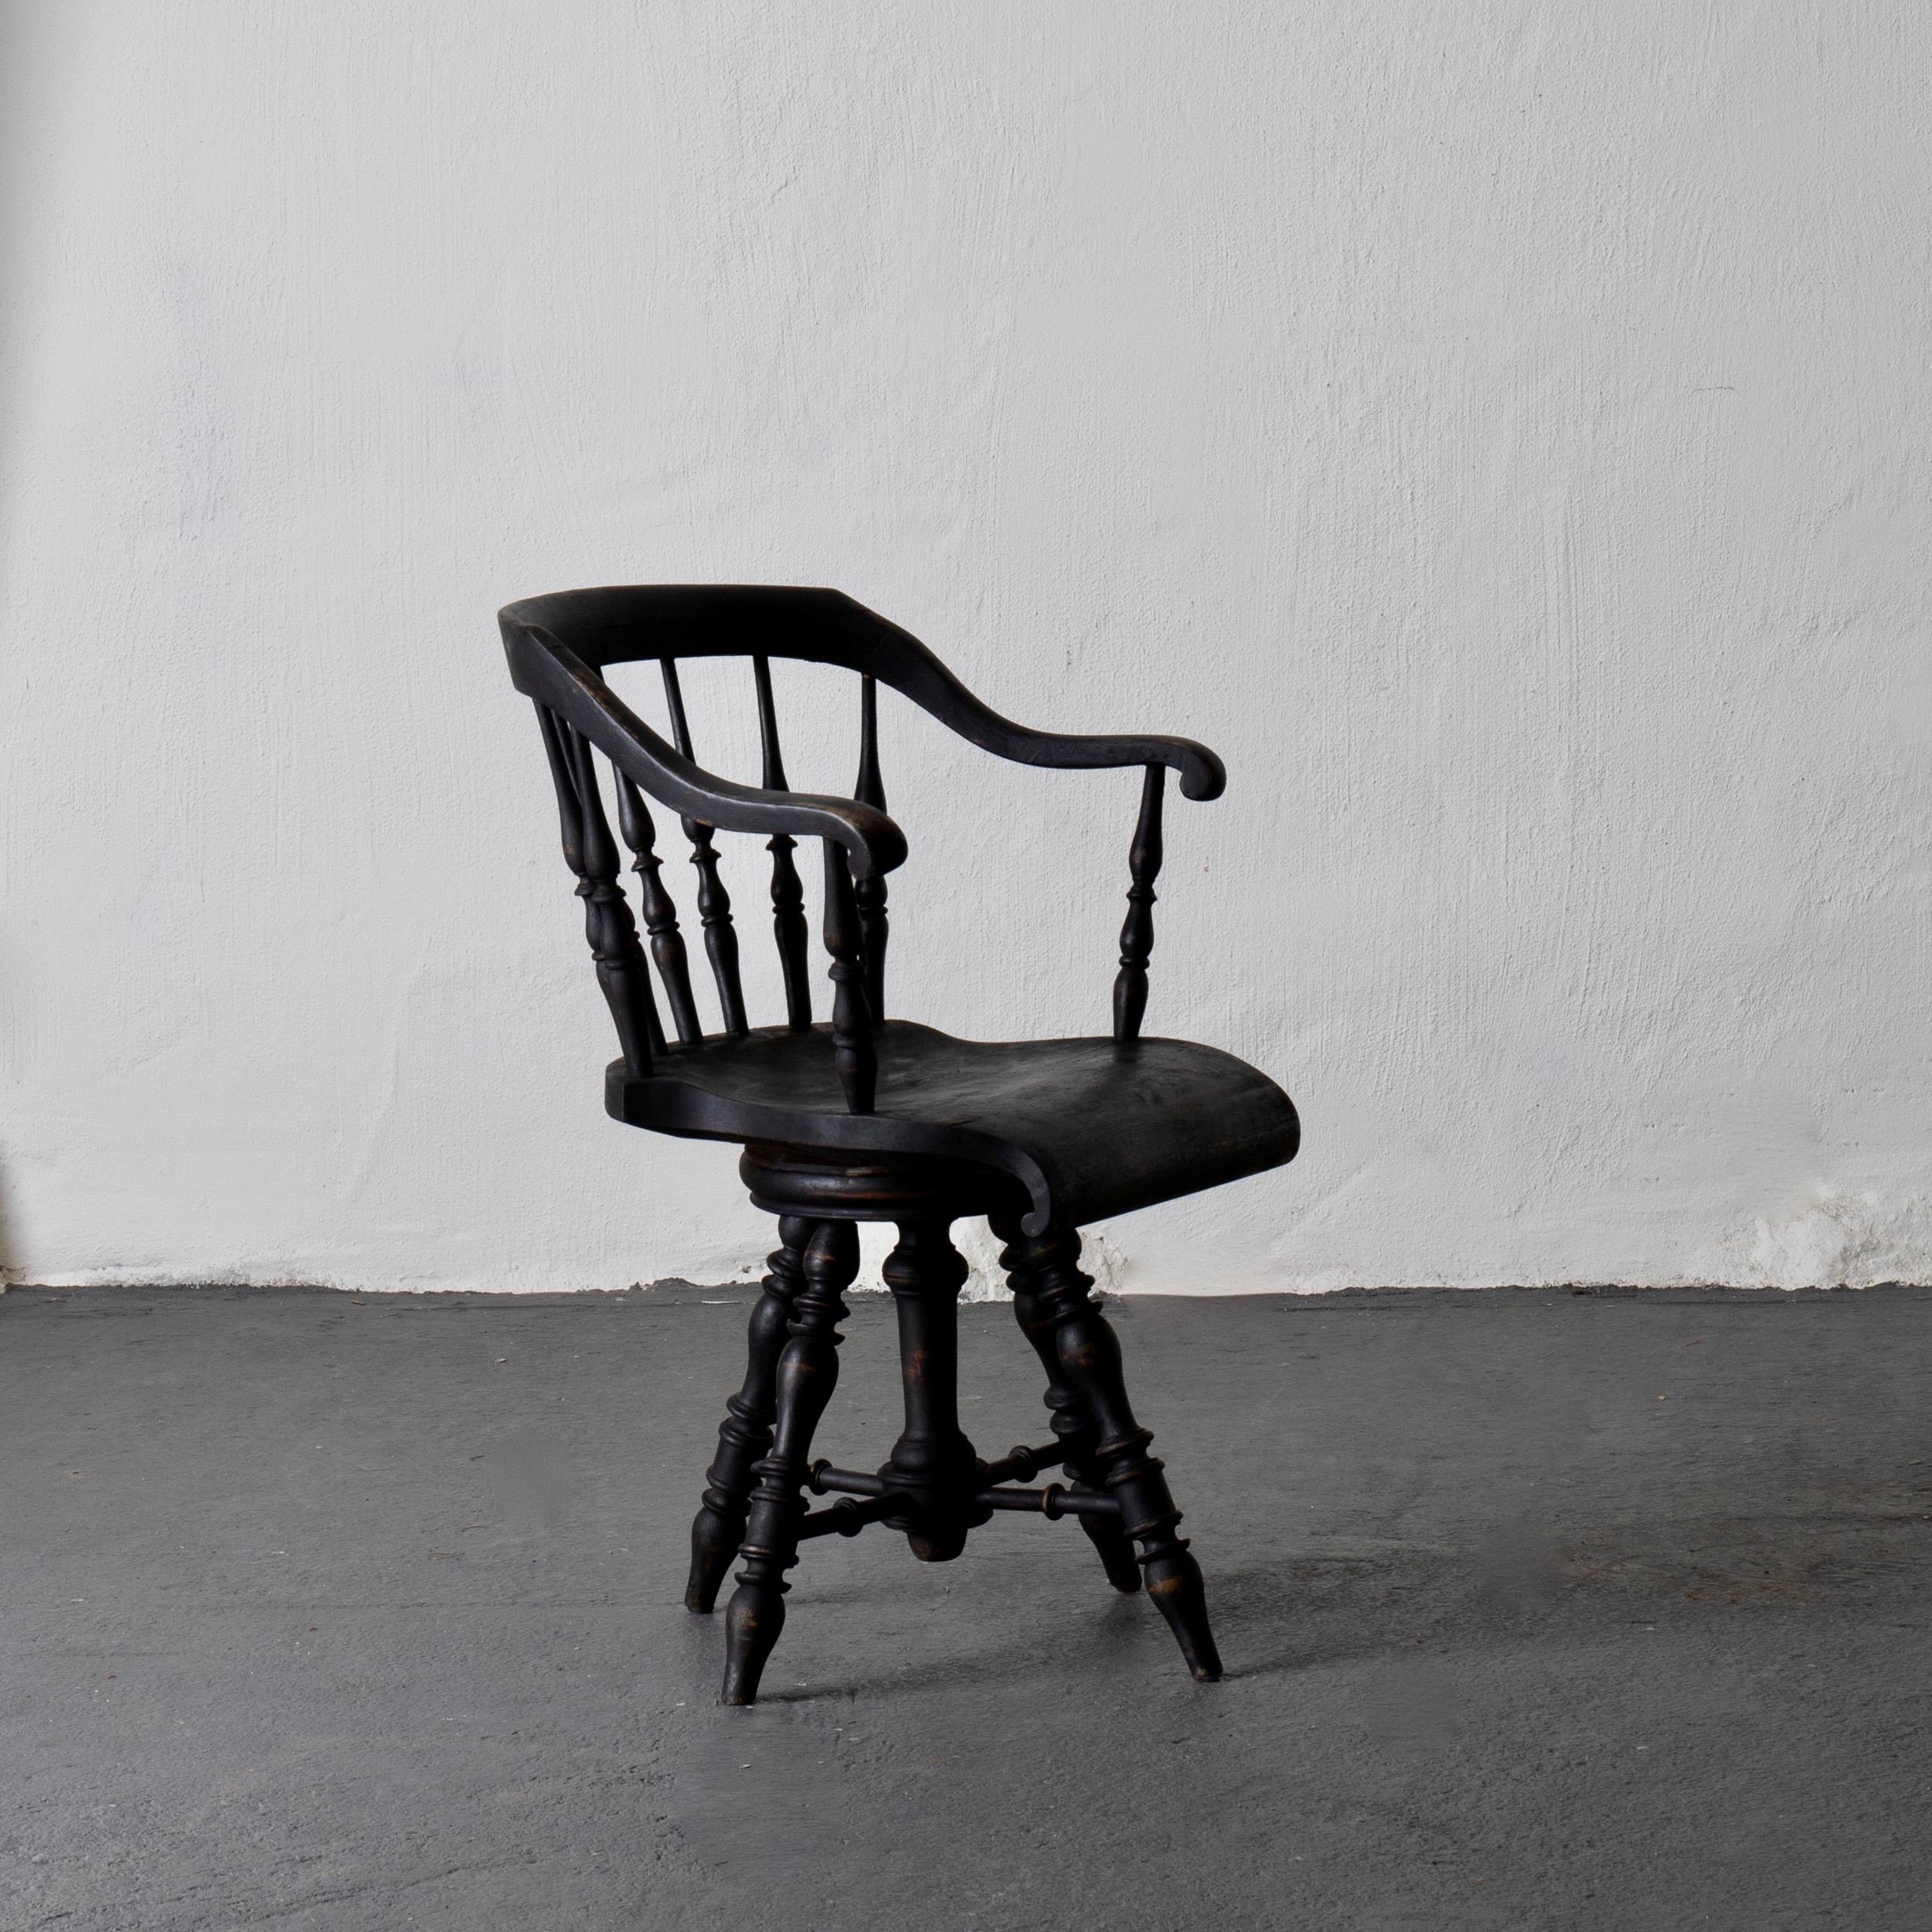 Fauteuil Fauteuil de capitaine noir suédois 19ème siècle Suède. Un fauteuil fabriqué à la fin du 19e siècle. Peint dans notre signature Laserow Black.